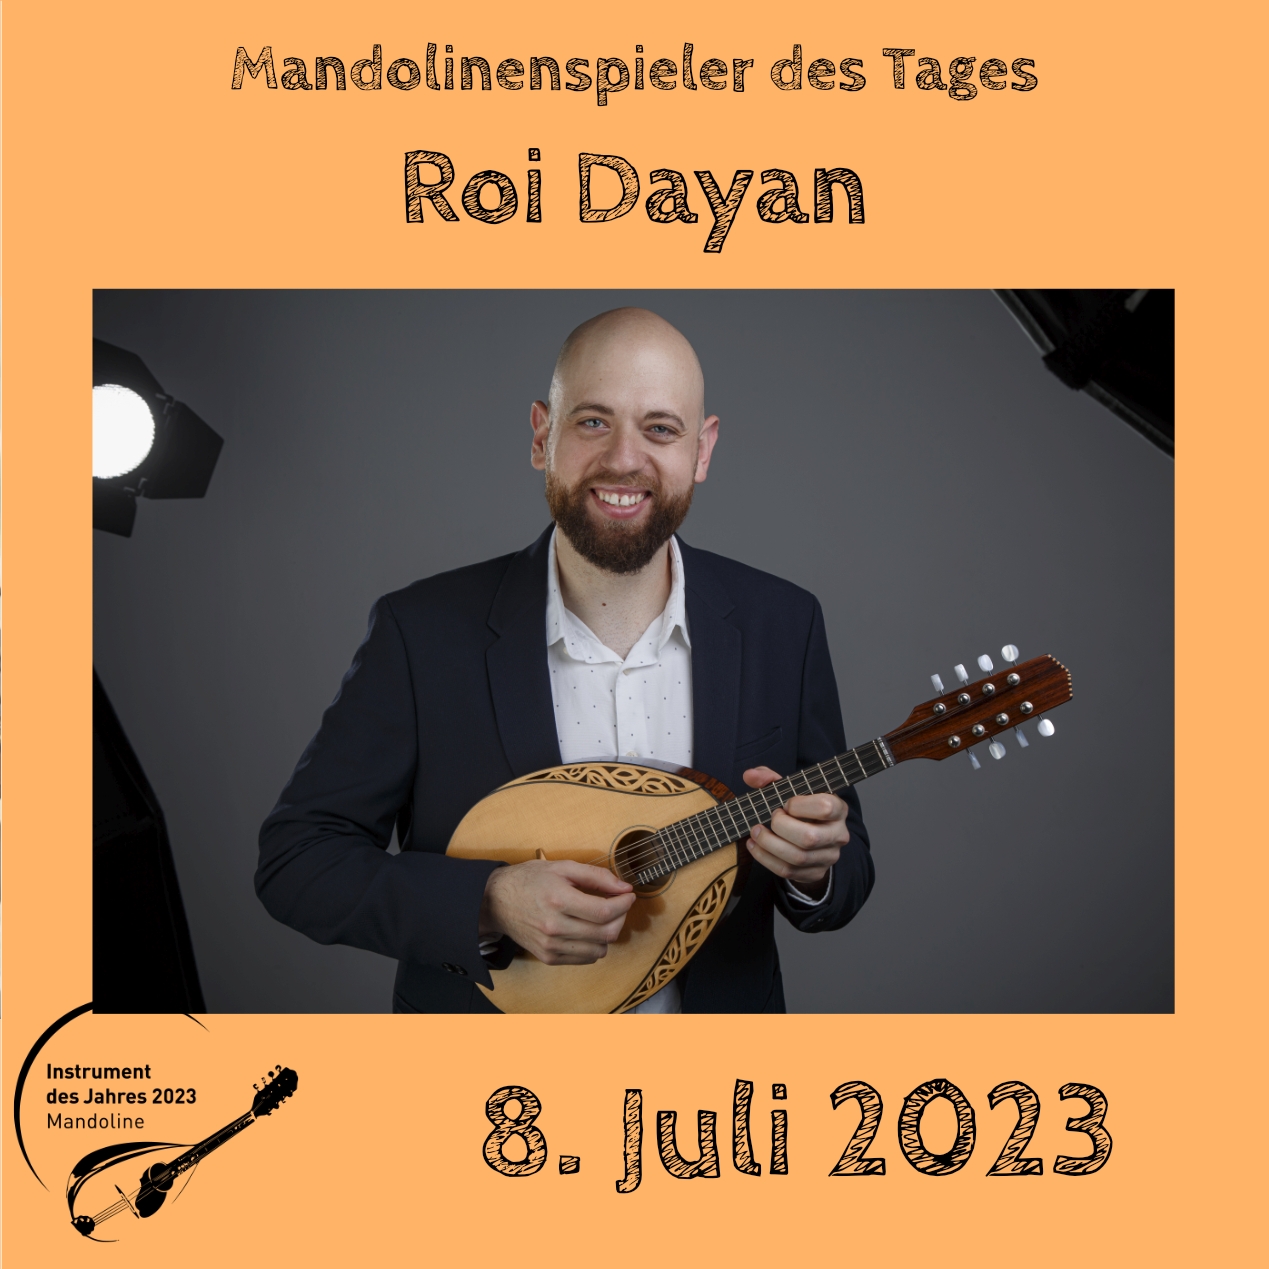 8. Juli - Roi Dayan Mandoline Instrument des Jahres 2023 Mandolinenspieler Mandolinenspielerin des Tages